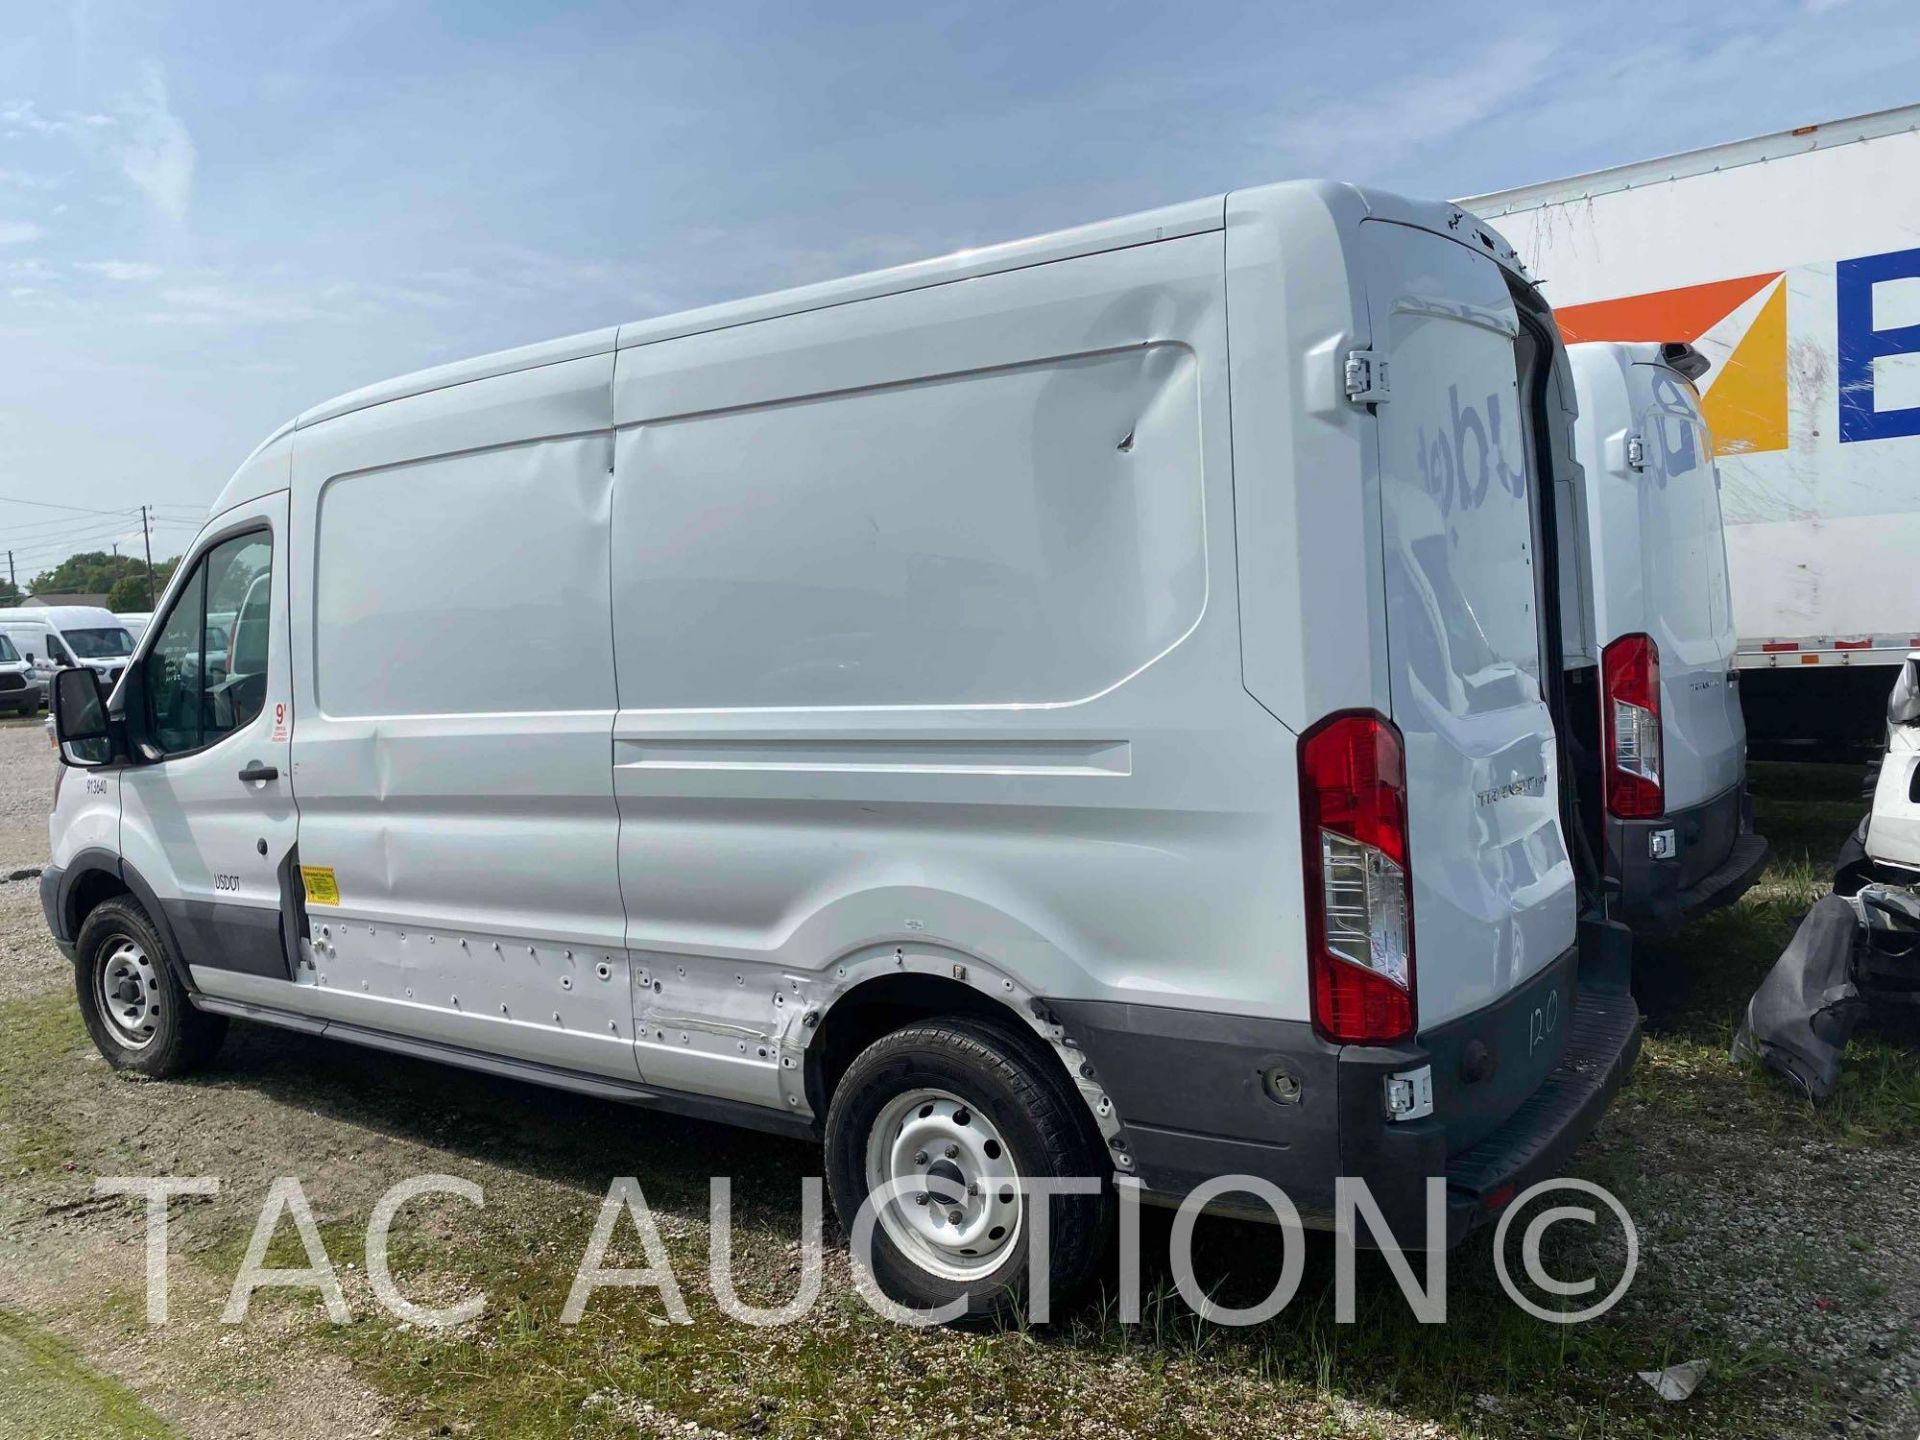 2019 Ford Transit 150 Cargo Van - Image 2 of 48